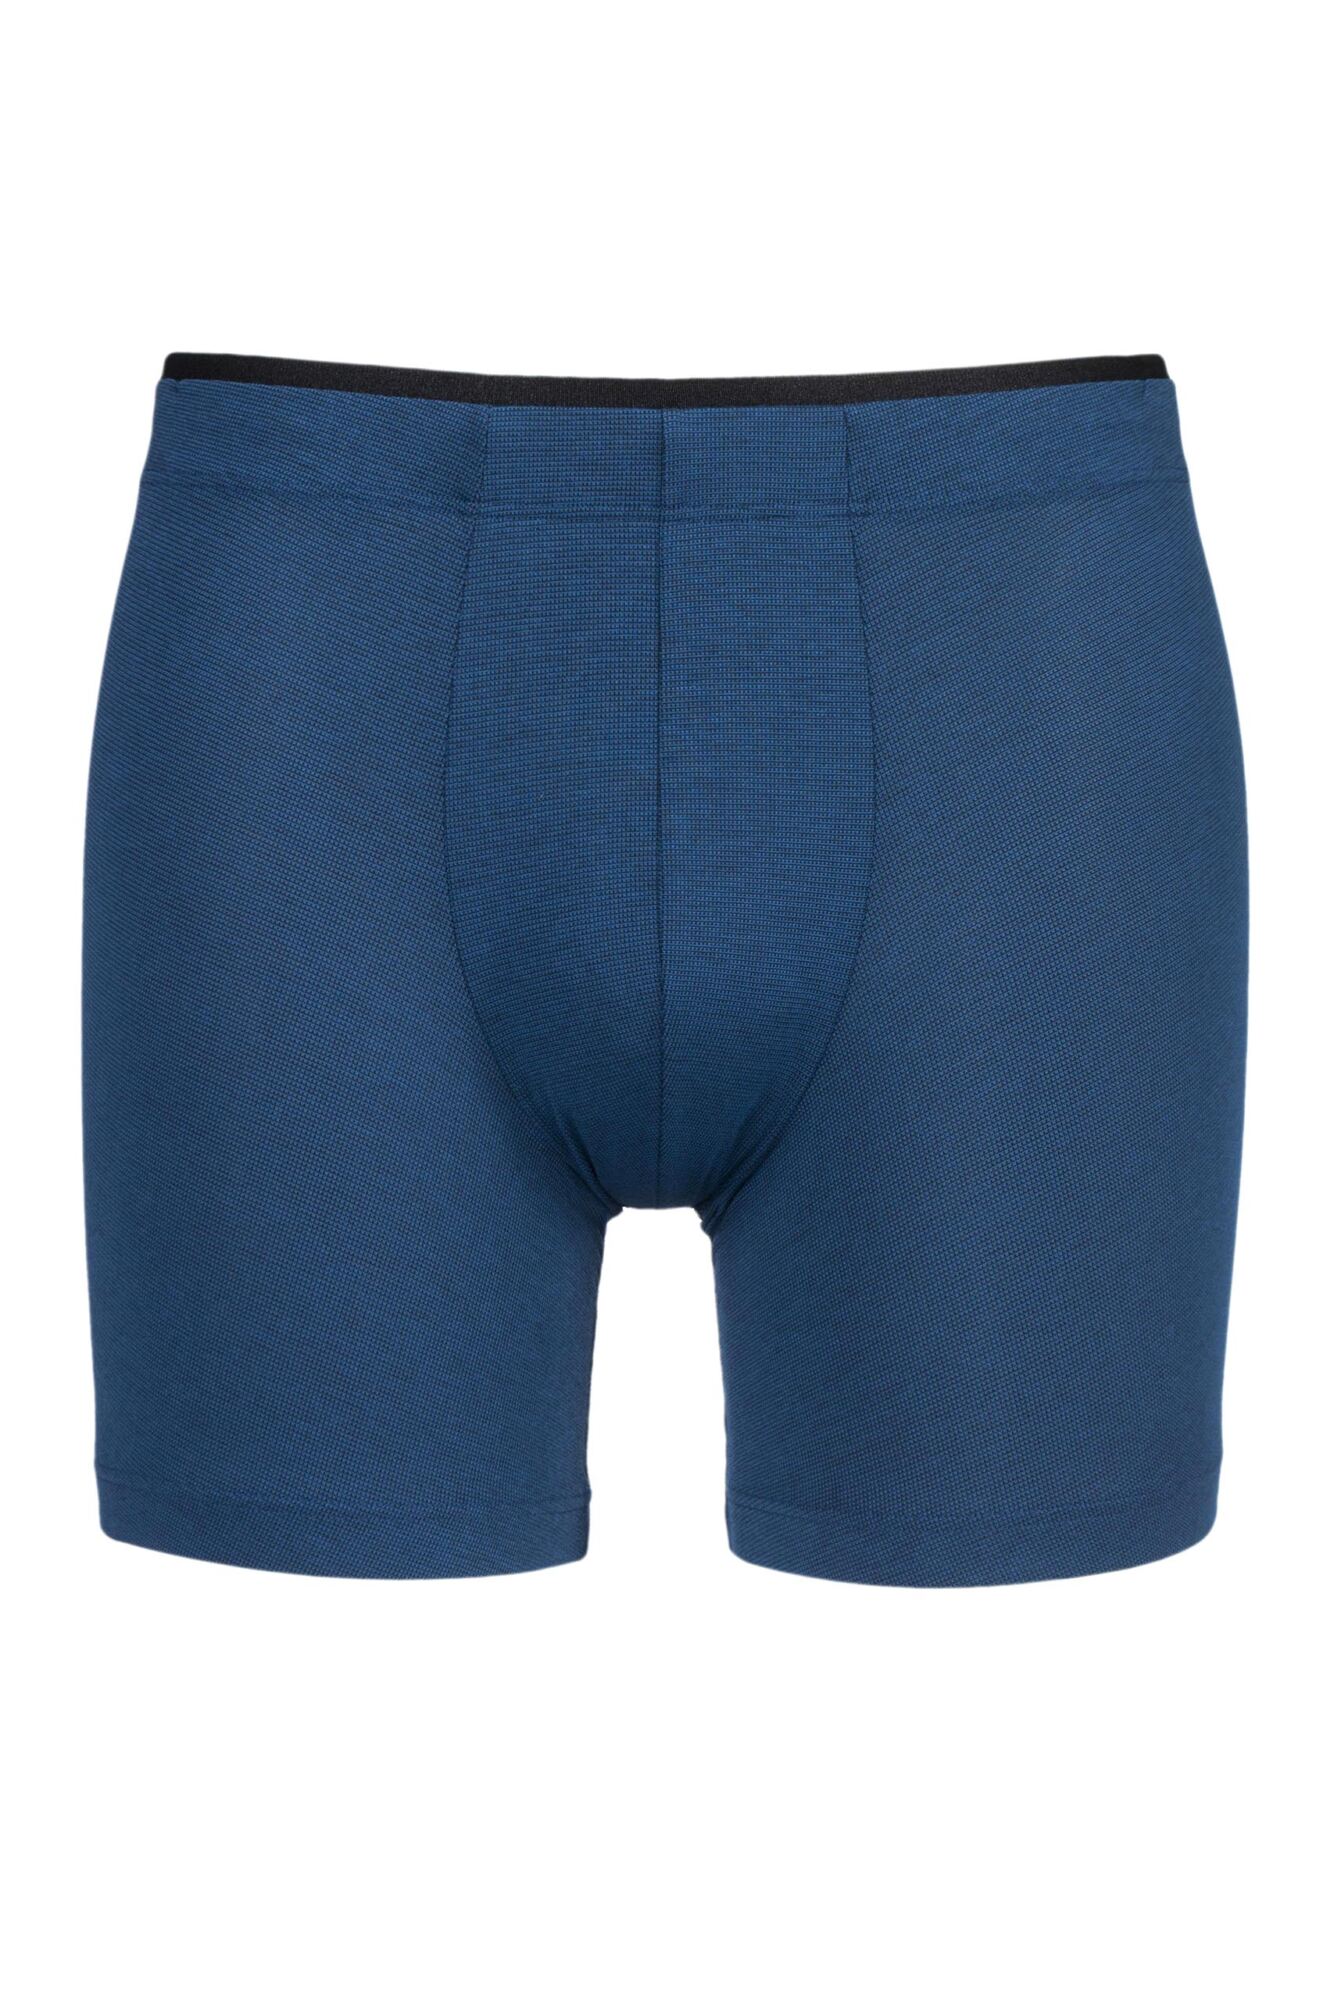 1 Pack Sophistication Modal Boxer Shorts Men's - Sloggi